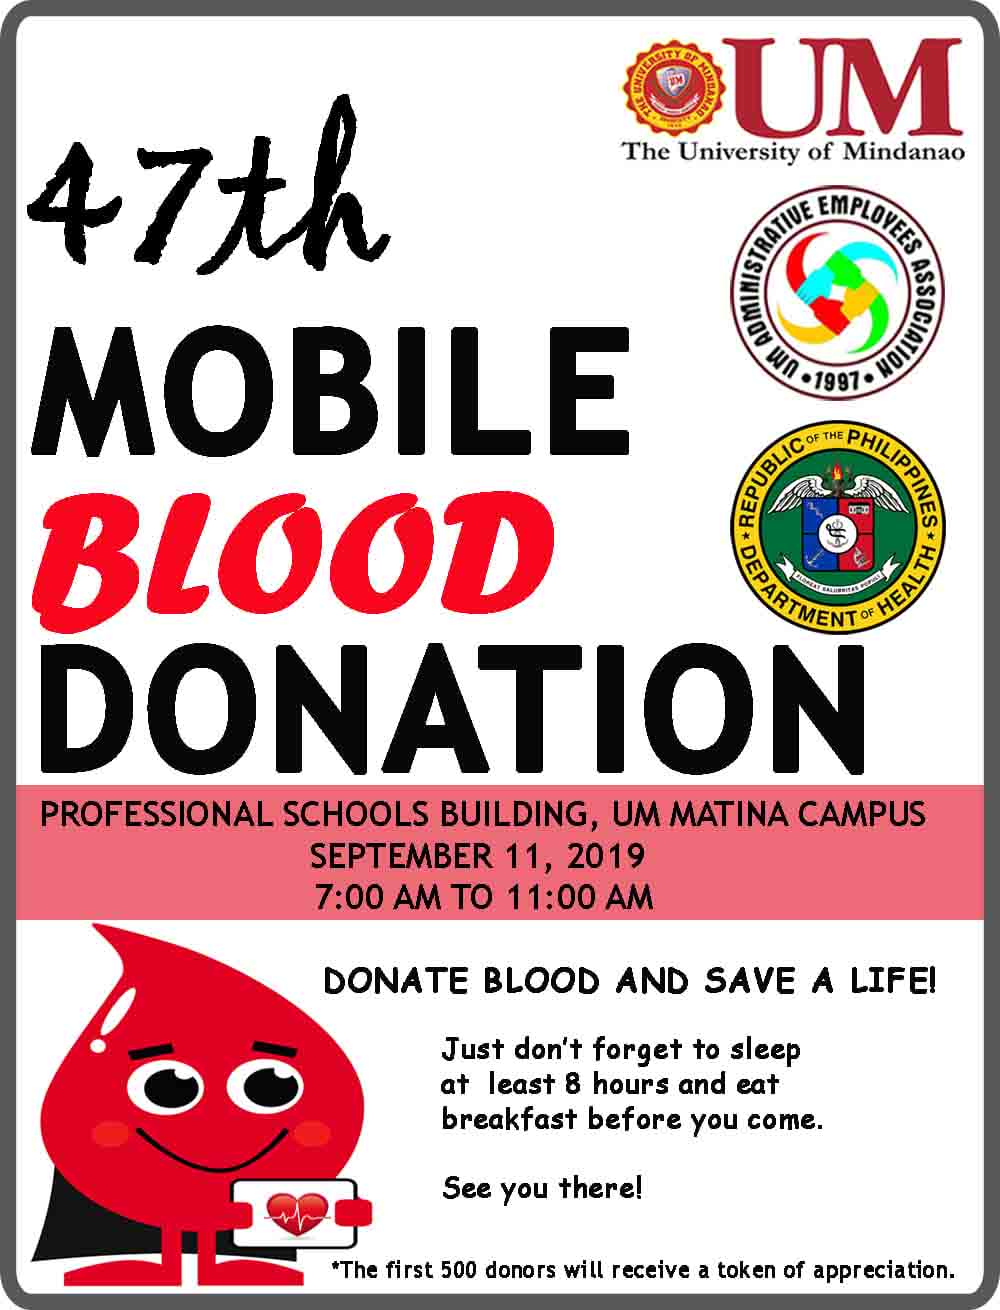 Donate blood, save a life on September 11 at UM Matina